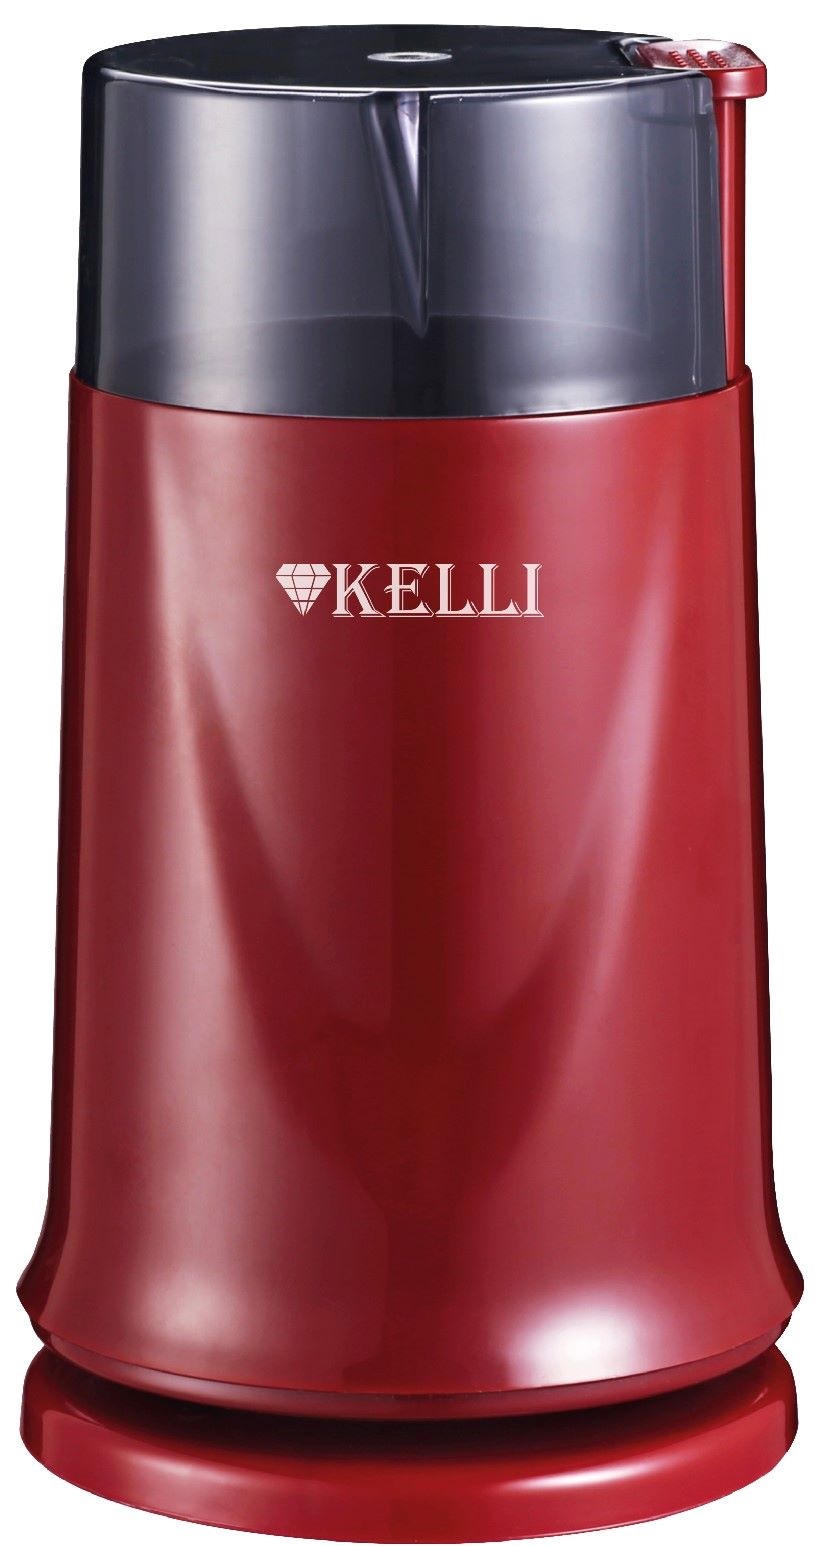 Кофемолка KELLI KL-5112 красная бытовая шлифовальная машина для измельчения порошка дробилка электрическая зерно специи зерновые кофемолка мельница